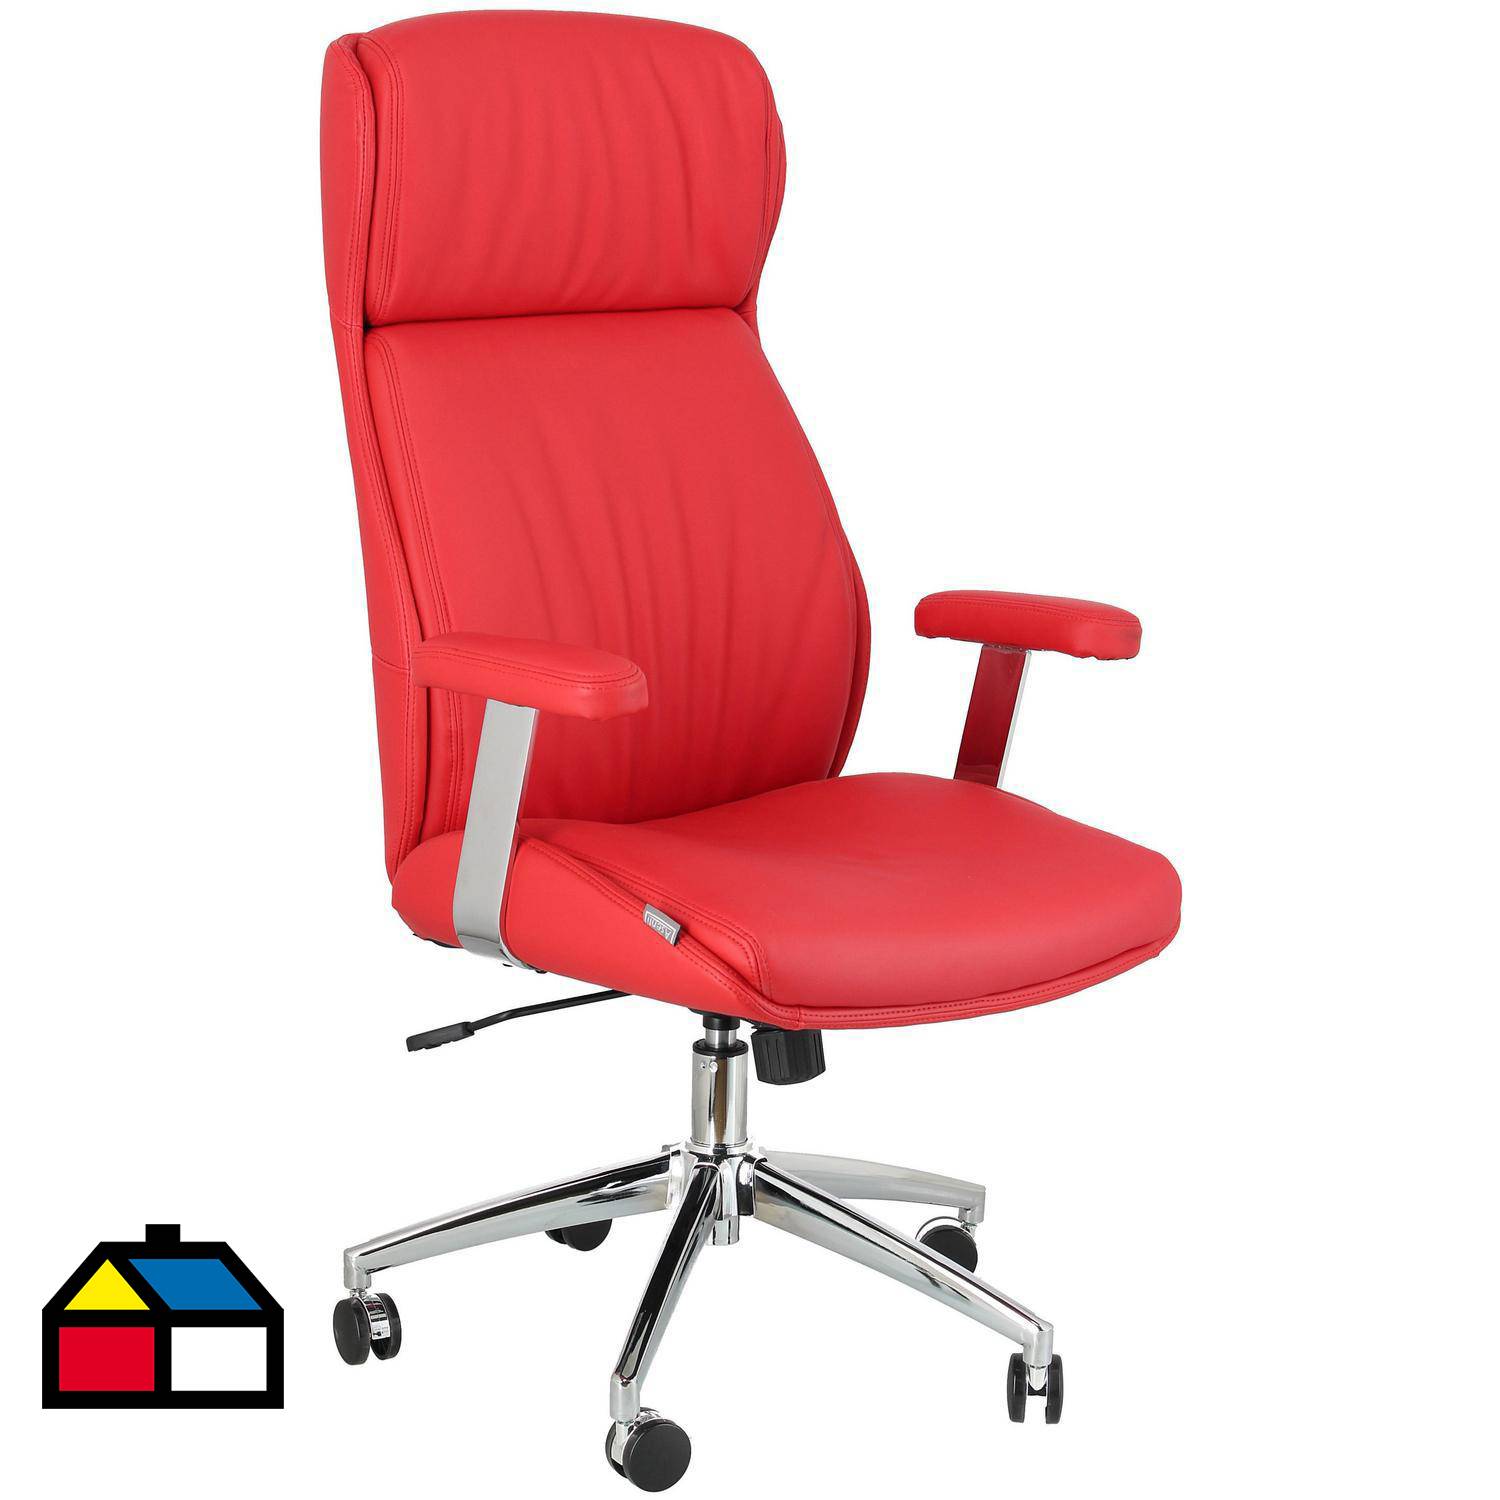 Pack de 4 sillas oficina rojo ref: 122 PC - Papeleria Segarra